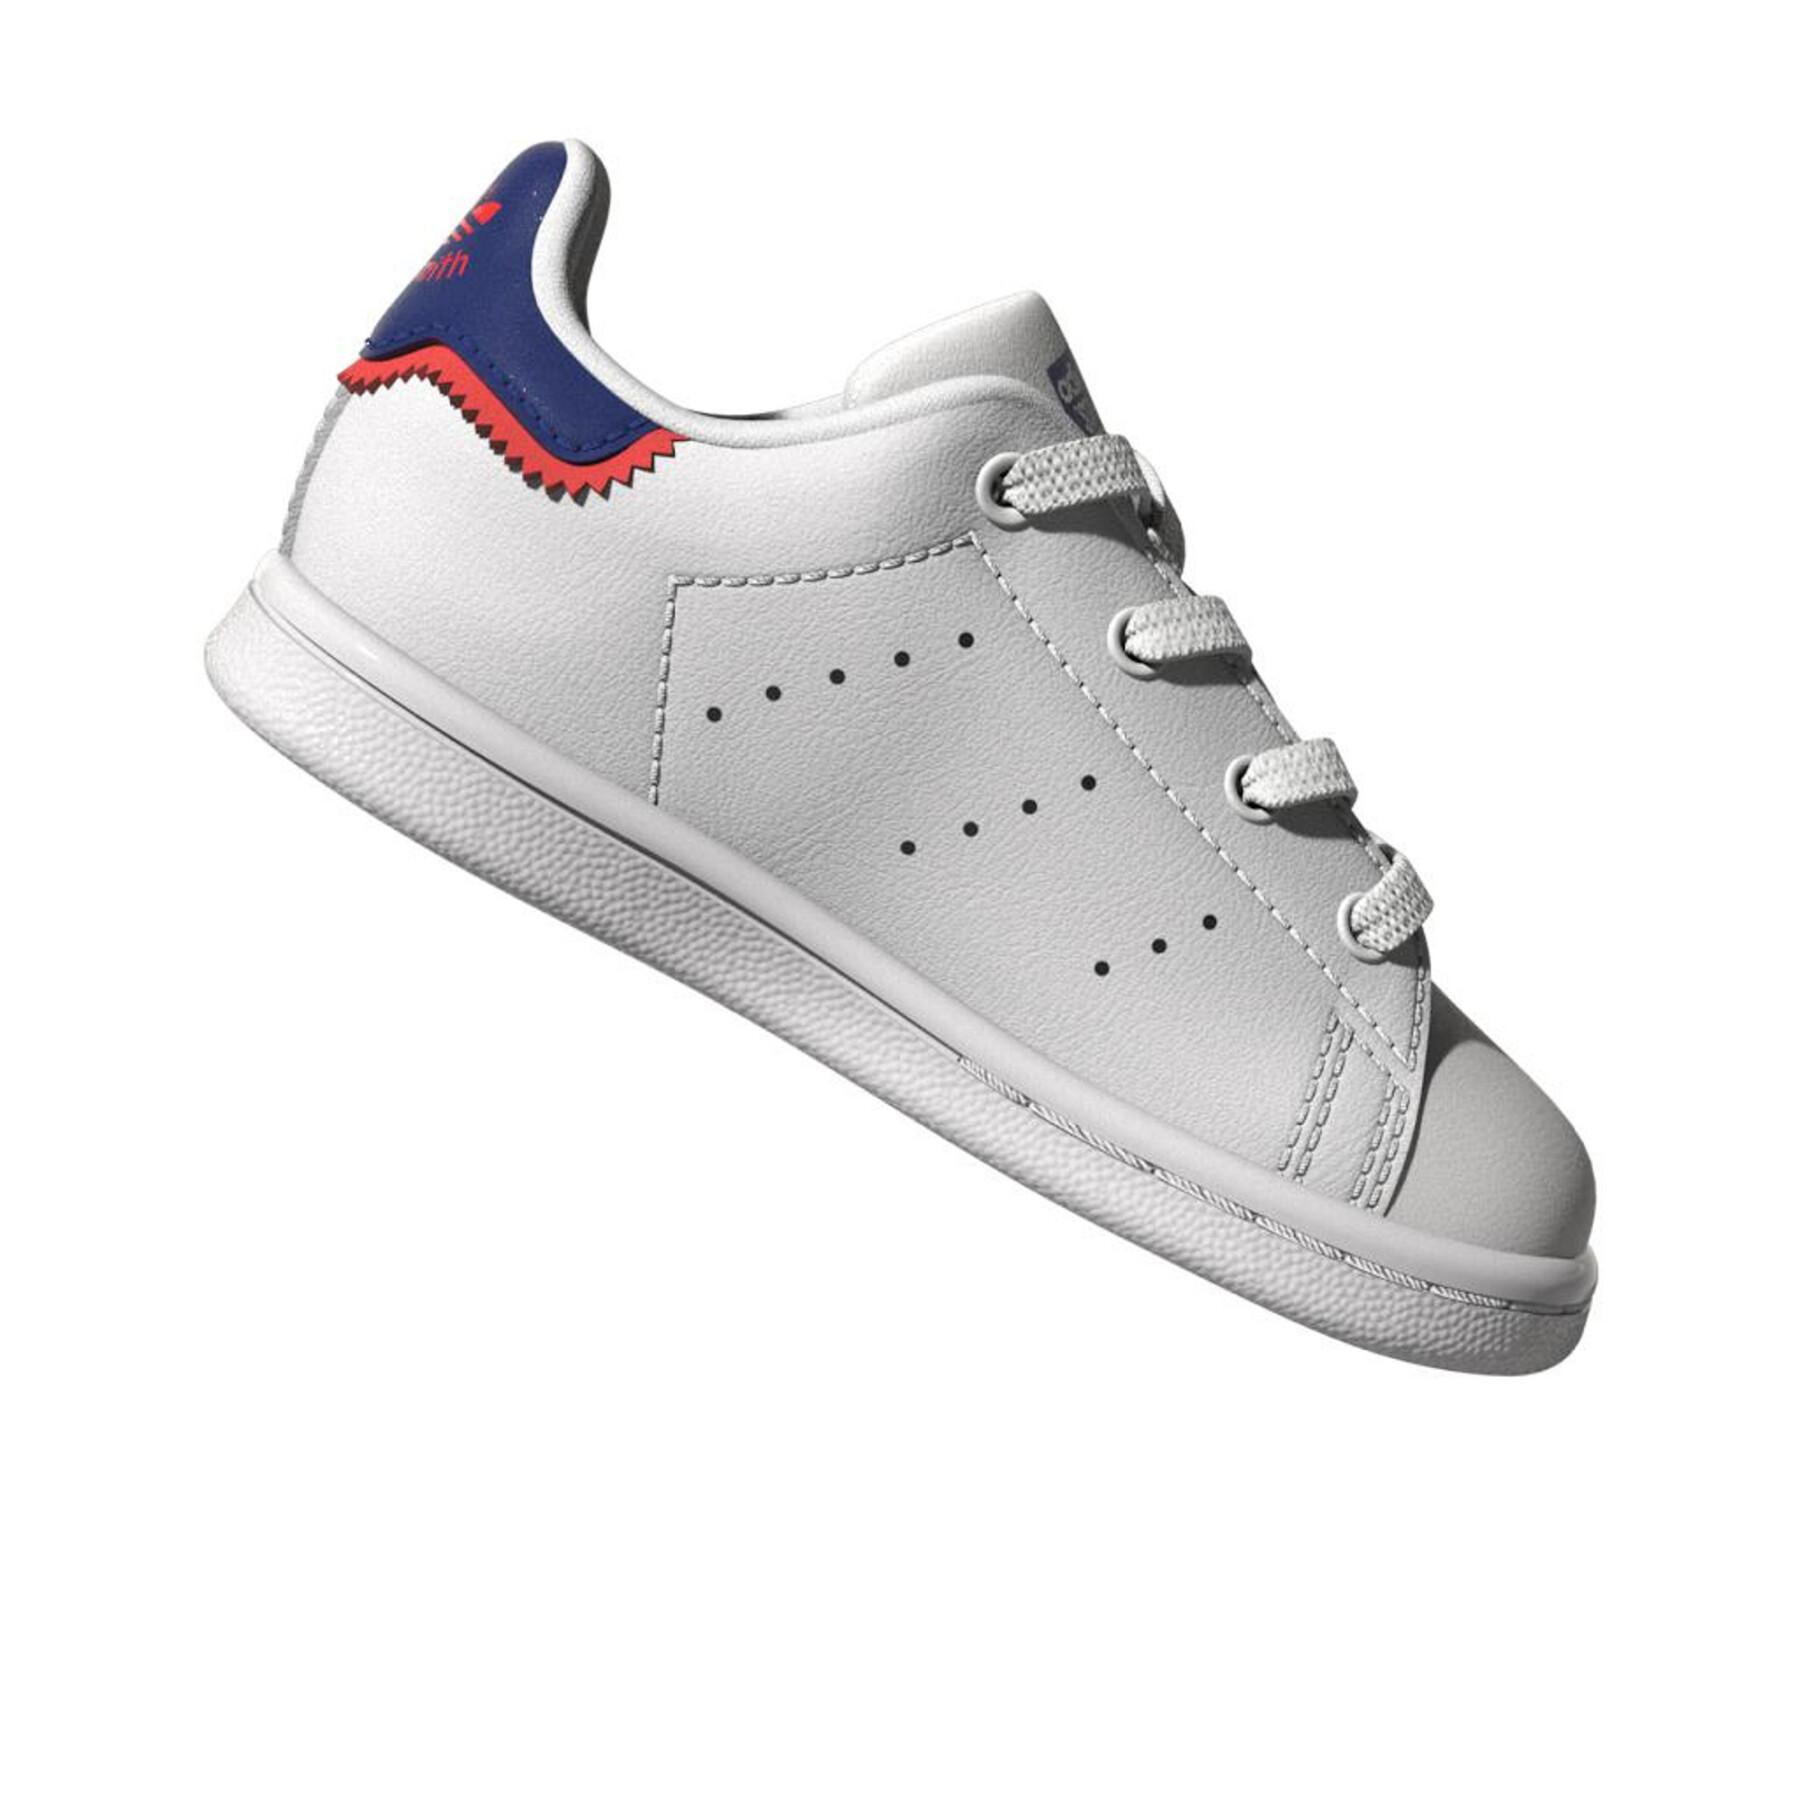 Baby sneakers adidas Originals Stan Smith